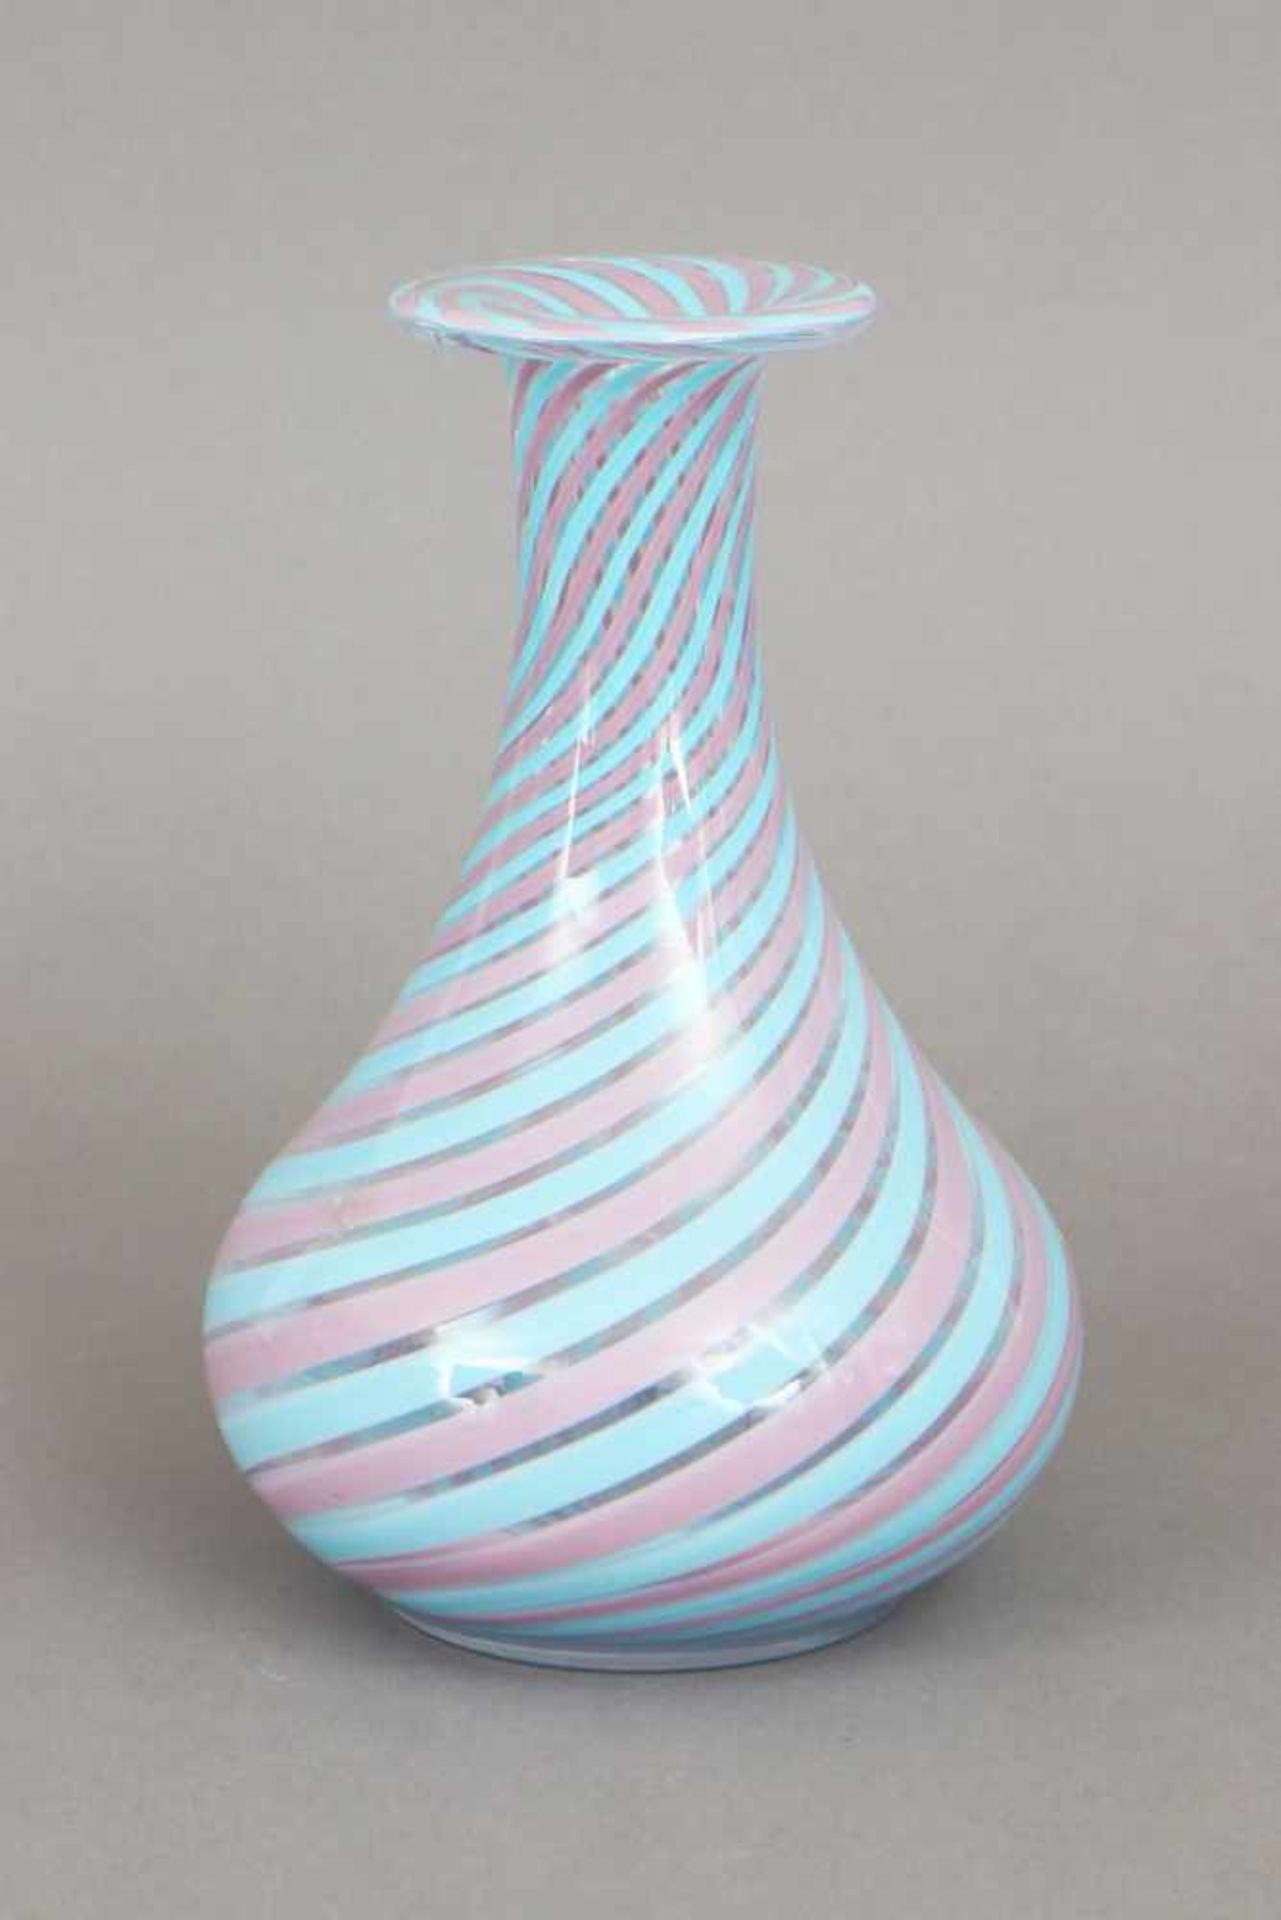 Glasvase im Stile Veninitropfenförmiger Korpus mit weit ausgestellter Mündung, türkis-rosa